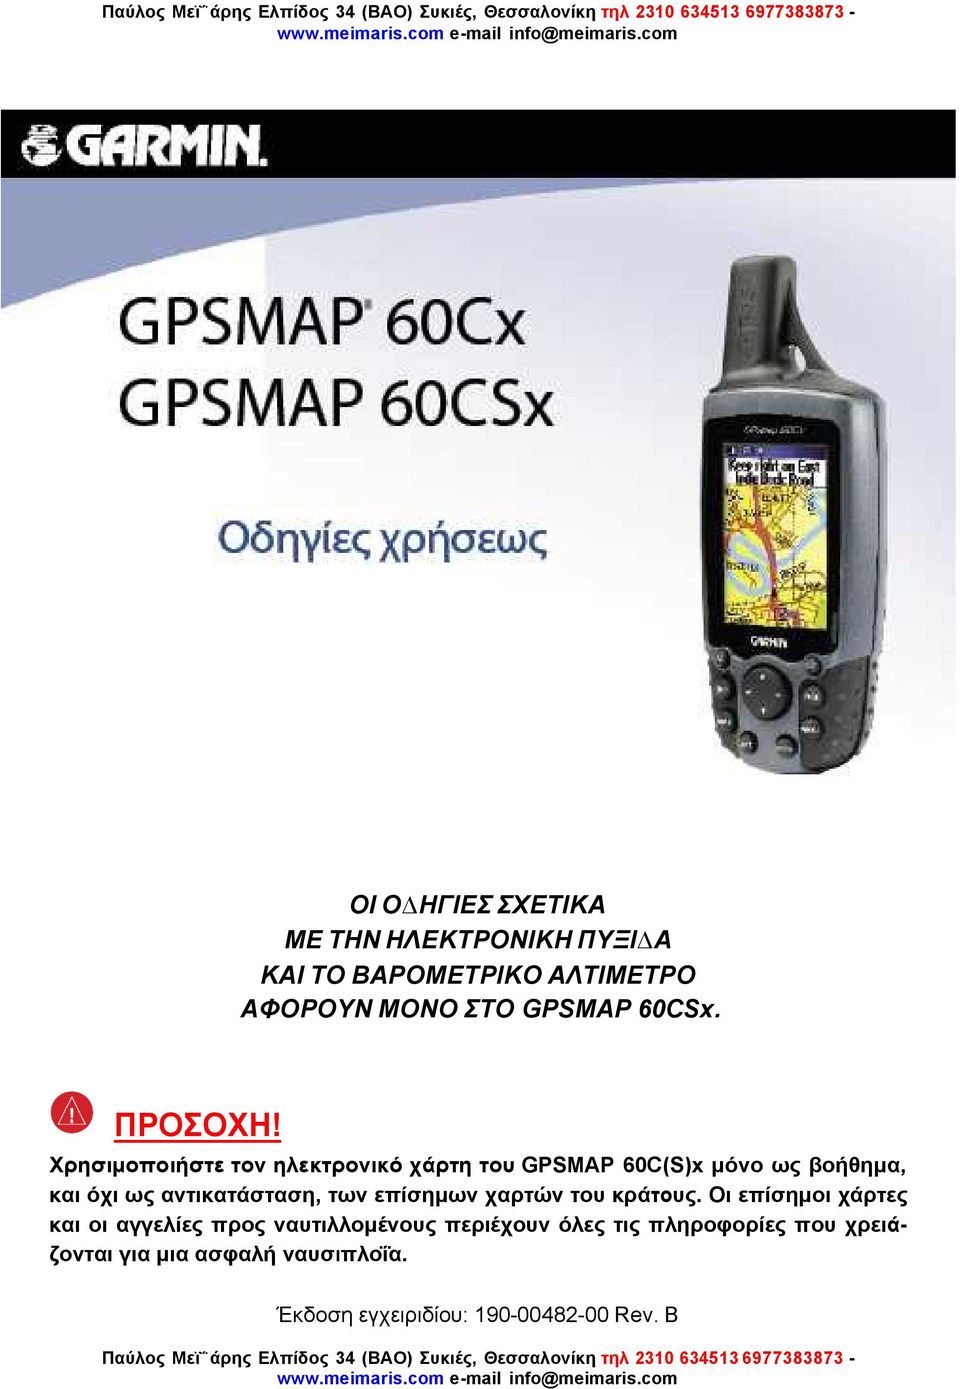 Χρησιµοποιήστε τον ηλεκτρονικό χάρτη του GPSMAP 60C(S)x µόνο ως βοήθηµα, και όχι ως αντικατάσταση, των